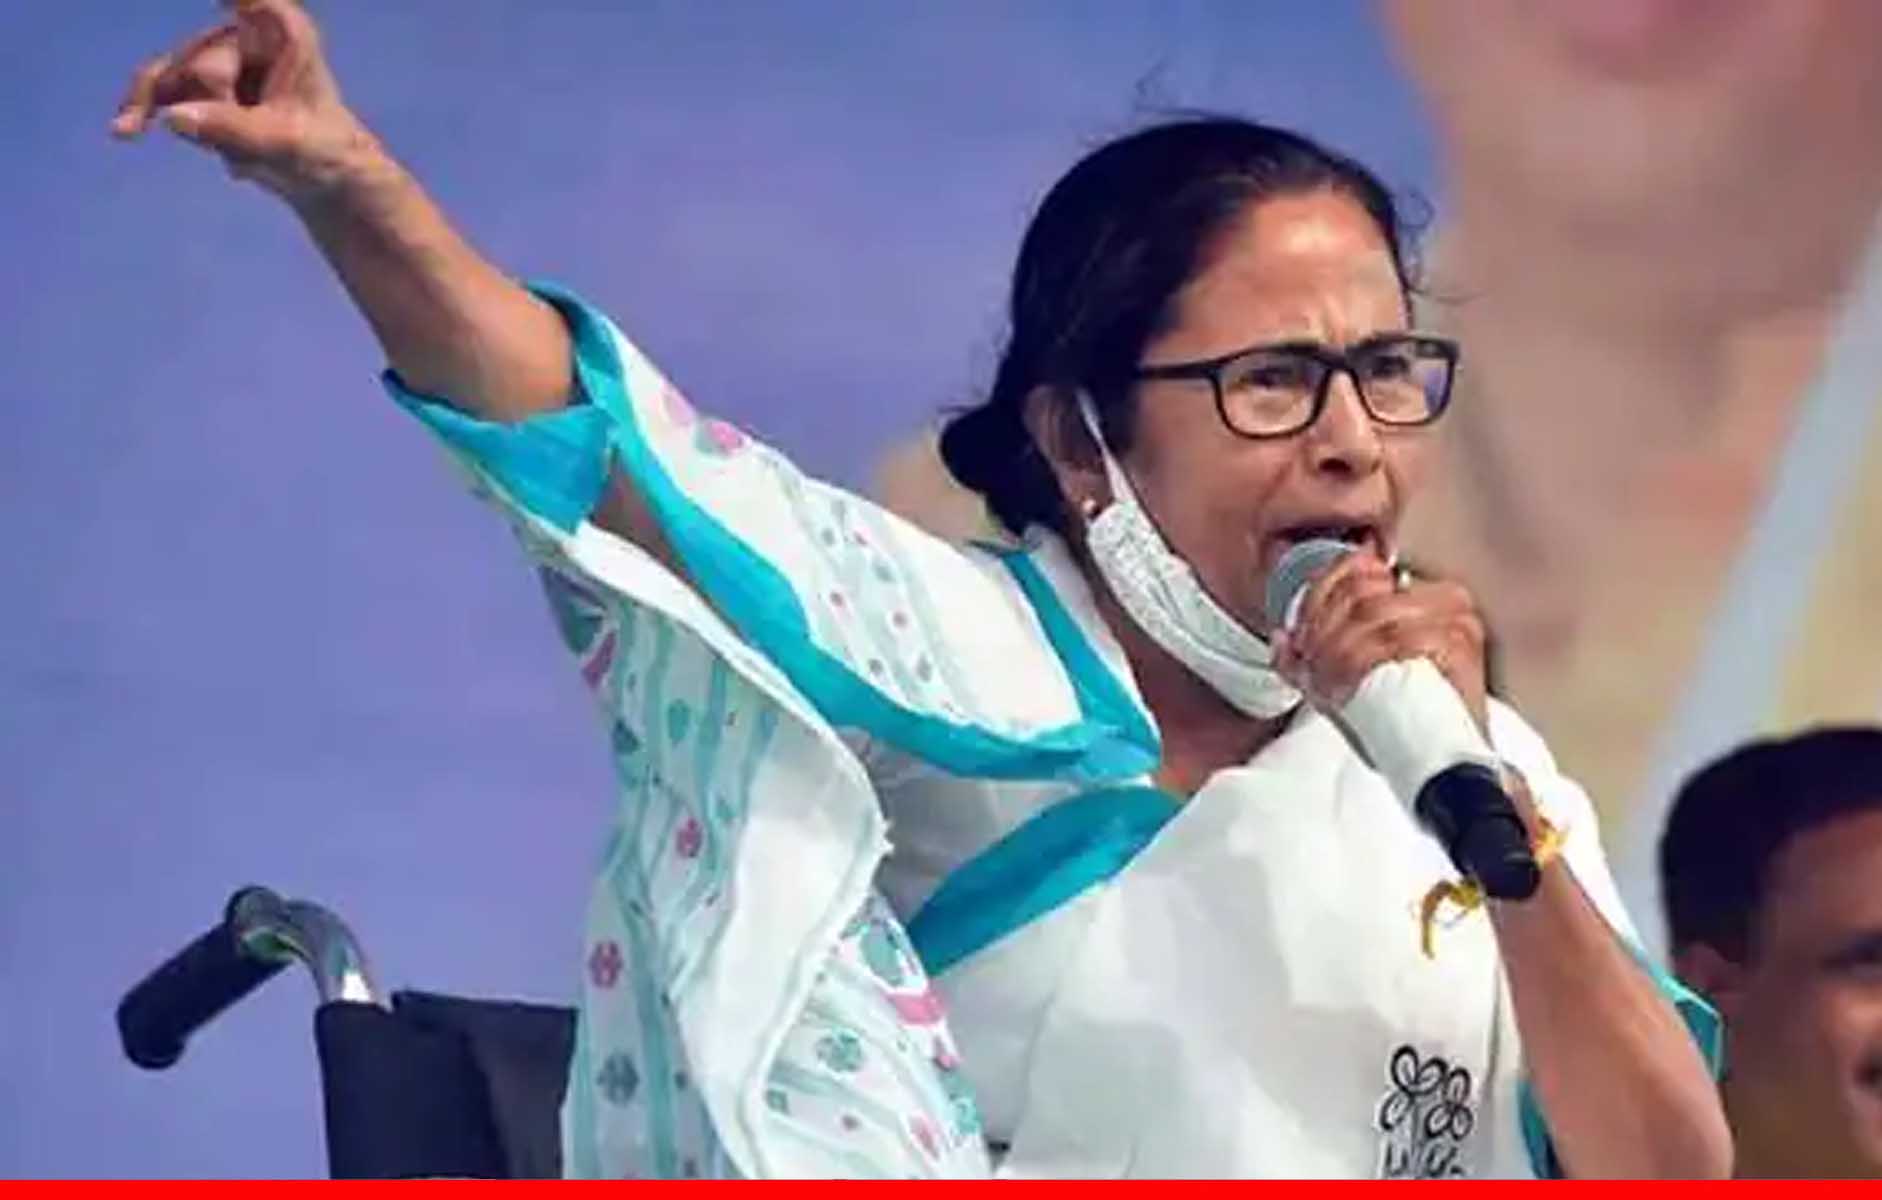 चुनाव आयोग की मदद के बिना बंगाल चुनाव में 30 सीटें भी न जीत पाती बीजेपी : ममता बनर्जी